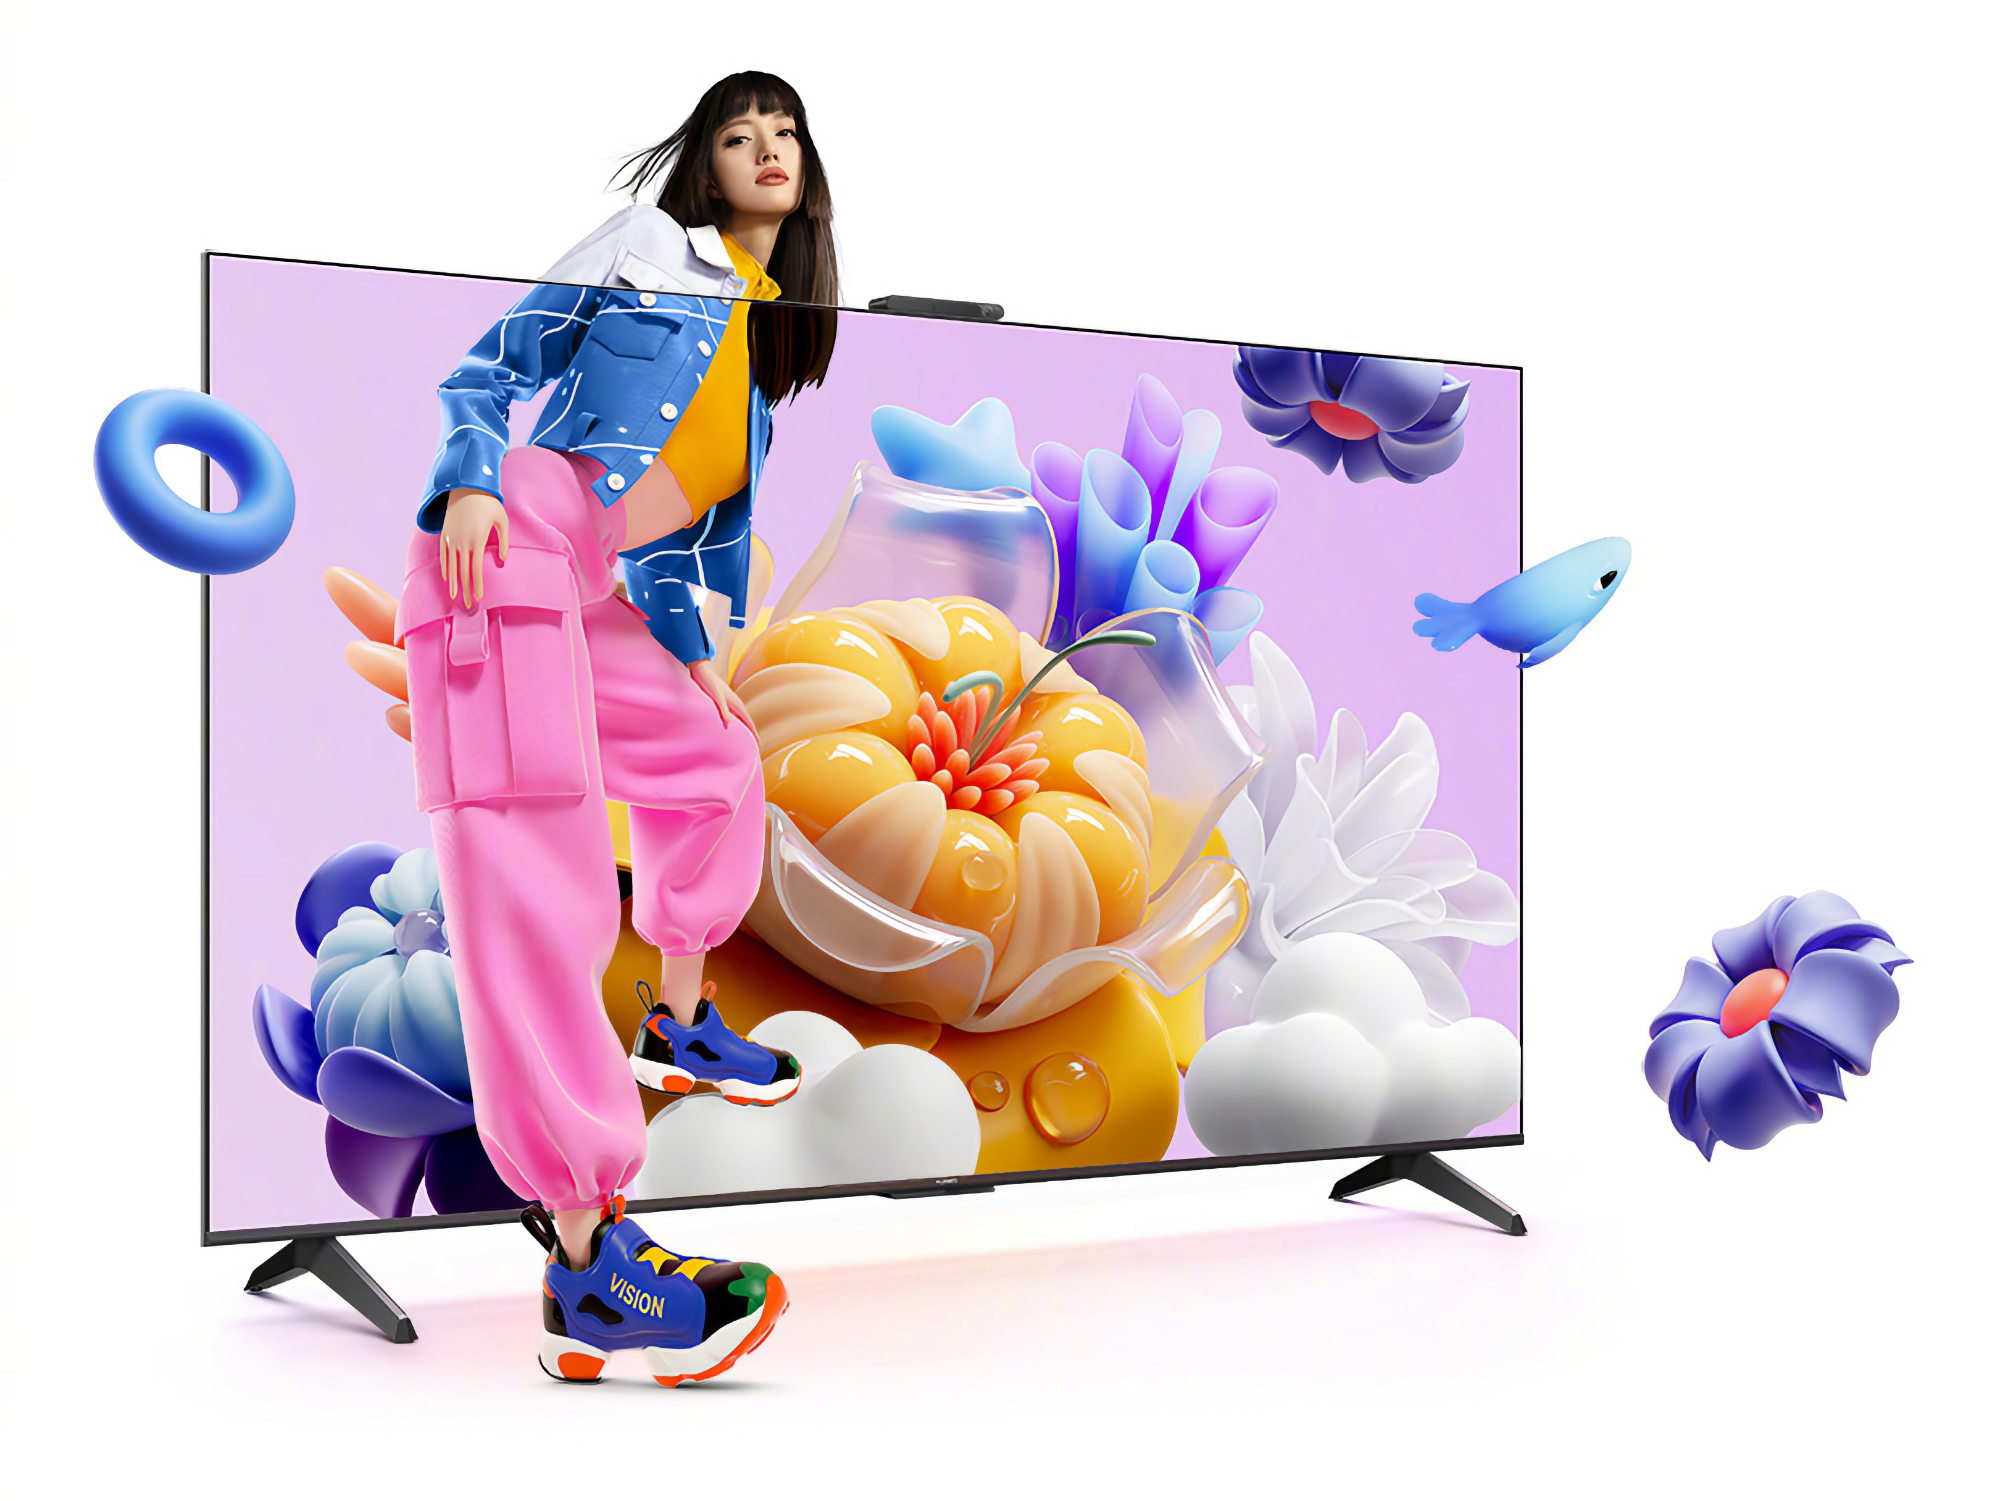 Huawei Vision Smart TV SE3: una gama de televisores inteligentes con pantallas 4K a 120 Hz y HarmonyOS a bordo con un precio a partir de 340 $.